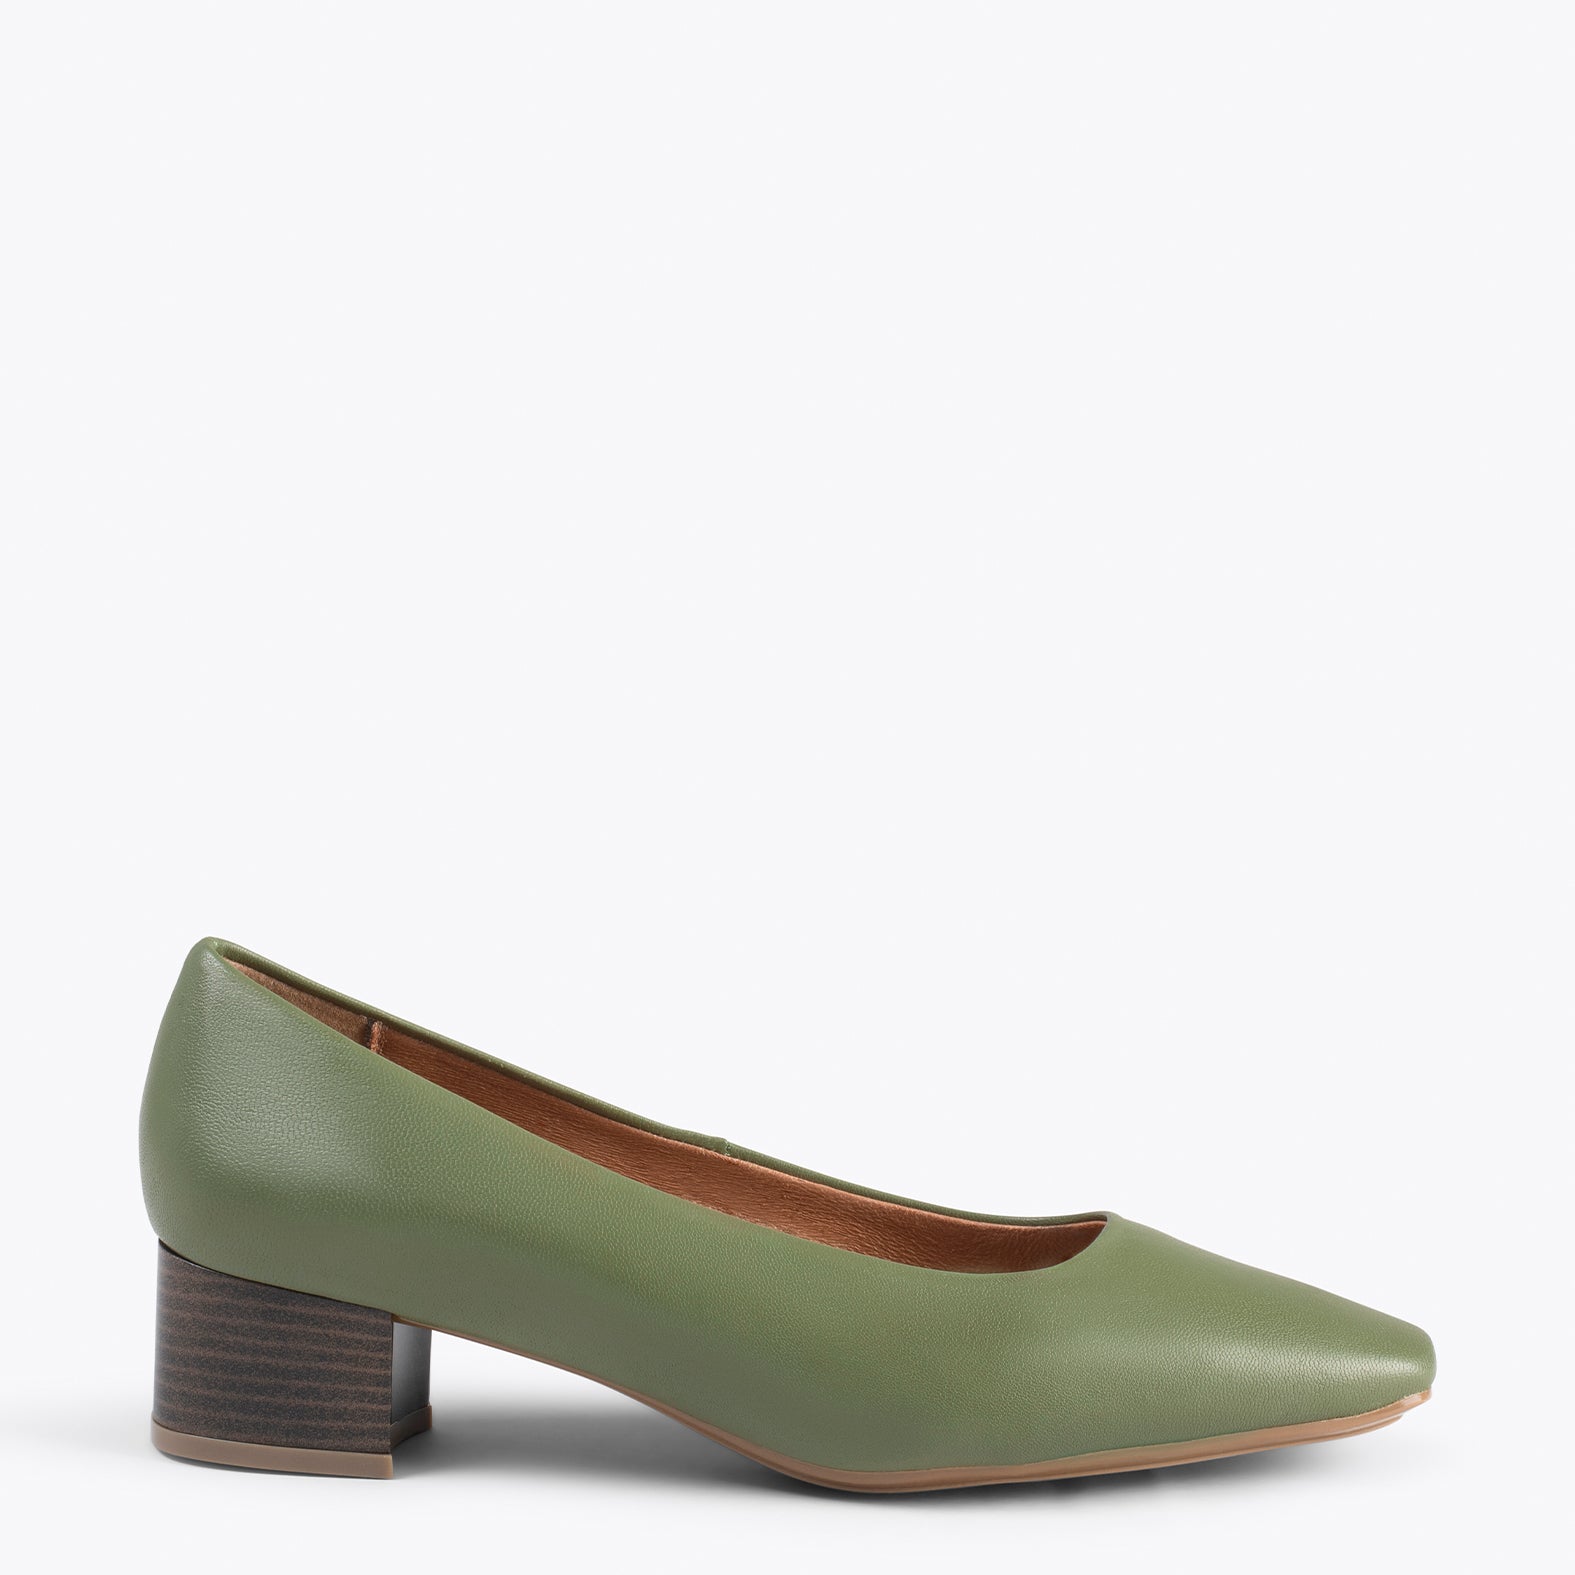 URBAN LADY – Chaussures à talon bas en cuir nappa KAKI